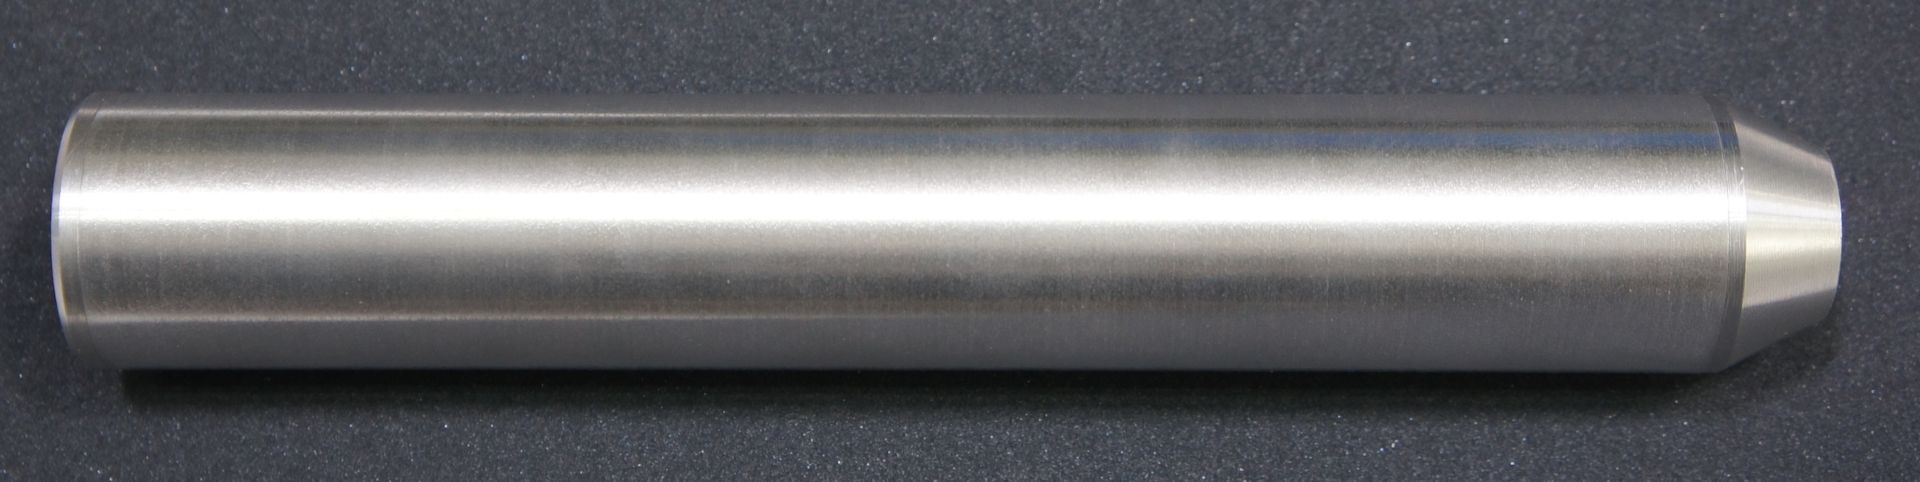 blanker Schalldämpfer aus gebürstetem Aluminium für Druckluftwaffen im Kal. 4Komma5 und 5komman5mm mit Laufgewinde 0.5 Zoll UNF20